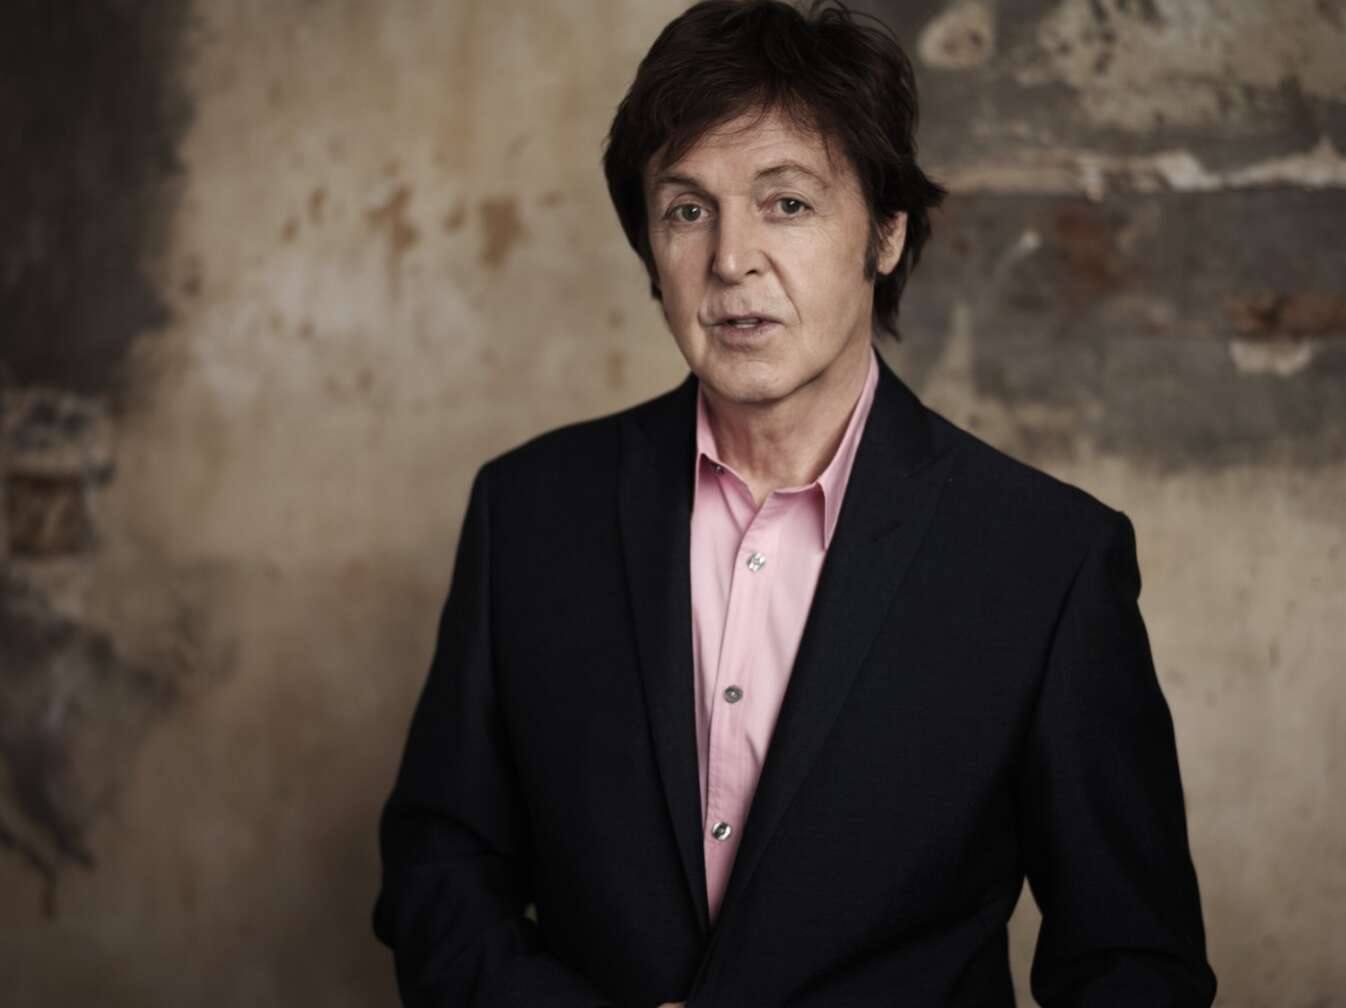 Paul McCartney im Porträt mit Sakko und lachsfarbenem Hemd